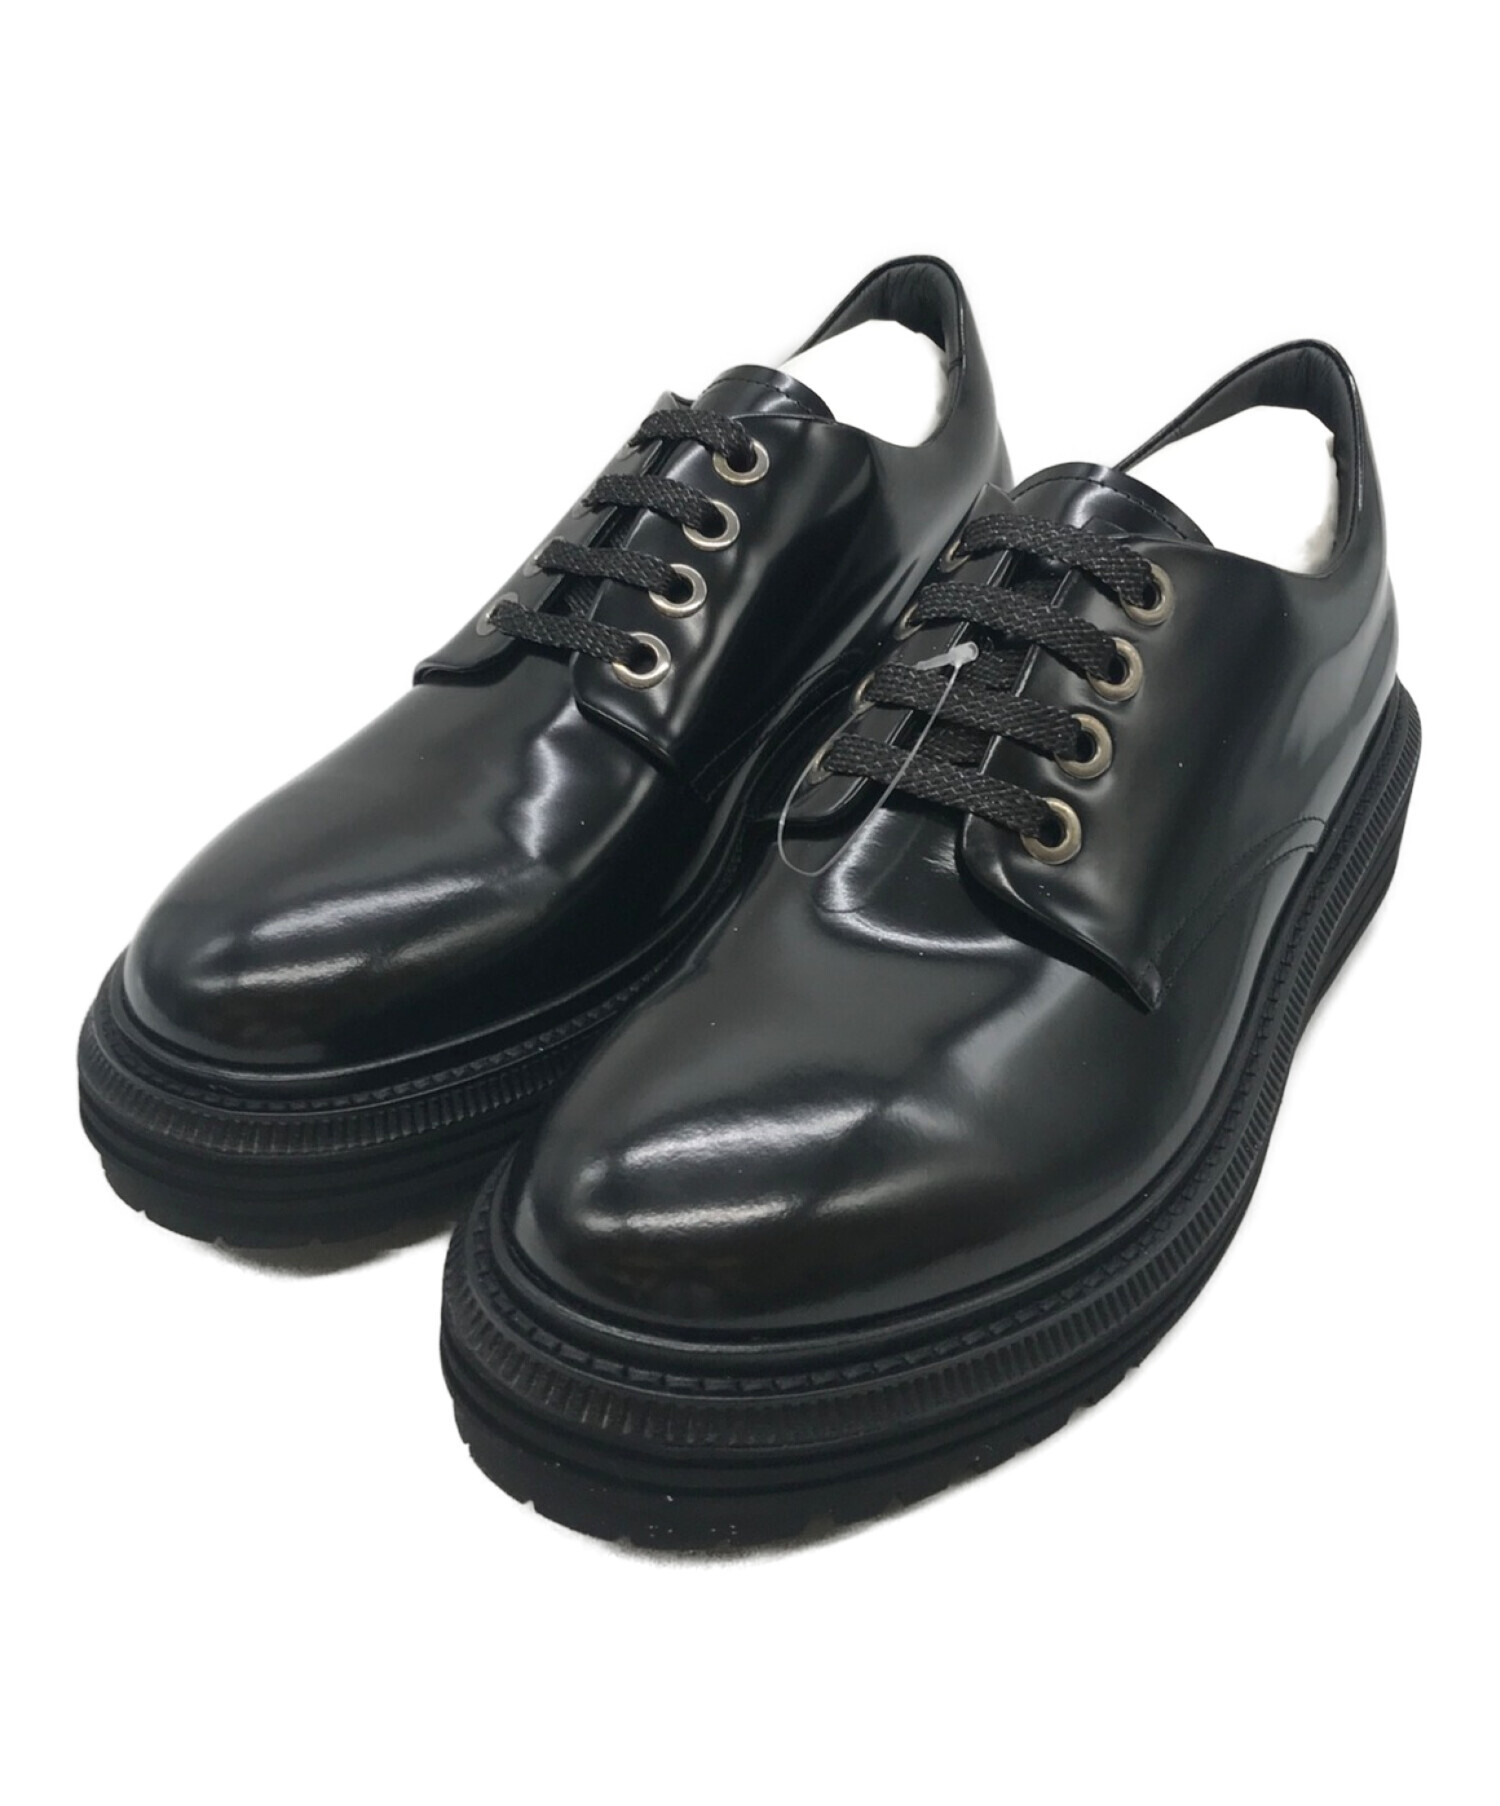 アルマーニ／EMPORIO ARMANI シューズ ビジネスシューズ 靴 ビジネス メンズ 男性 男性用レザー 革 本革 ブラック 黒  XEU174 レザーソール